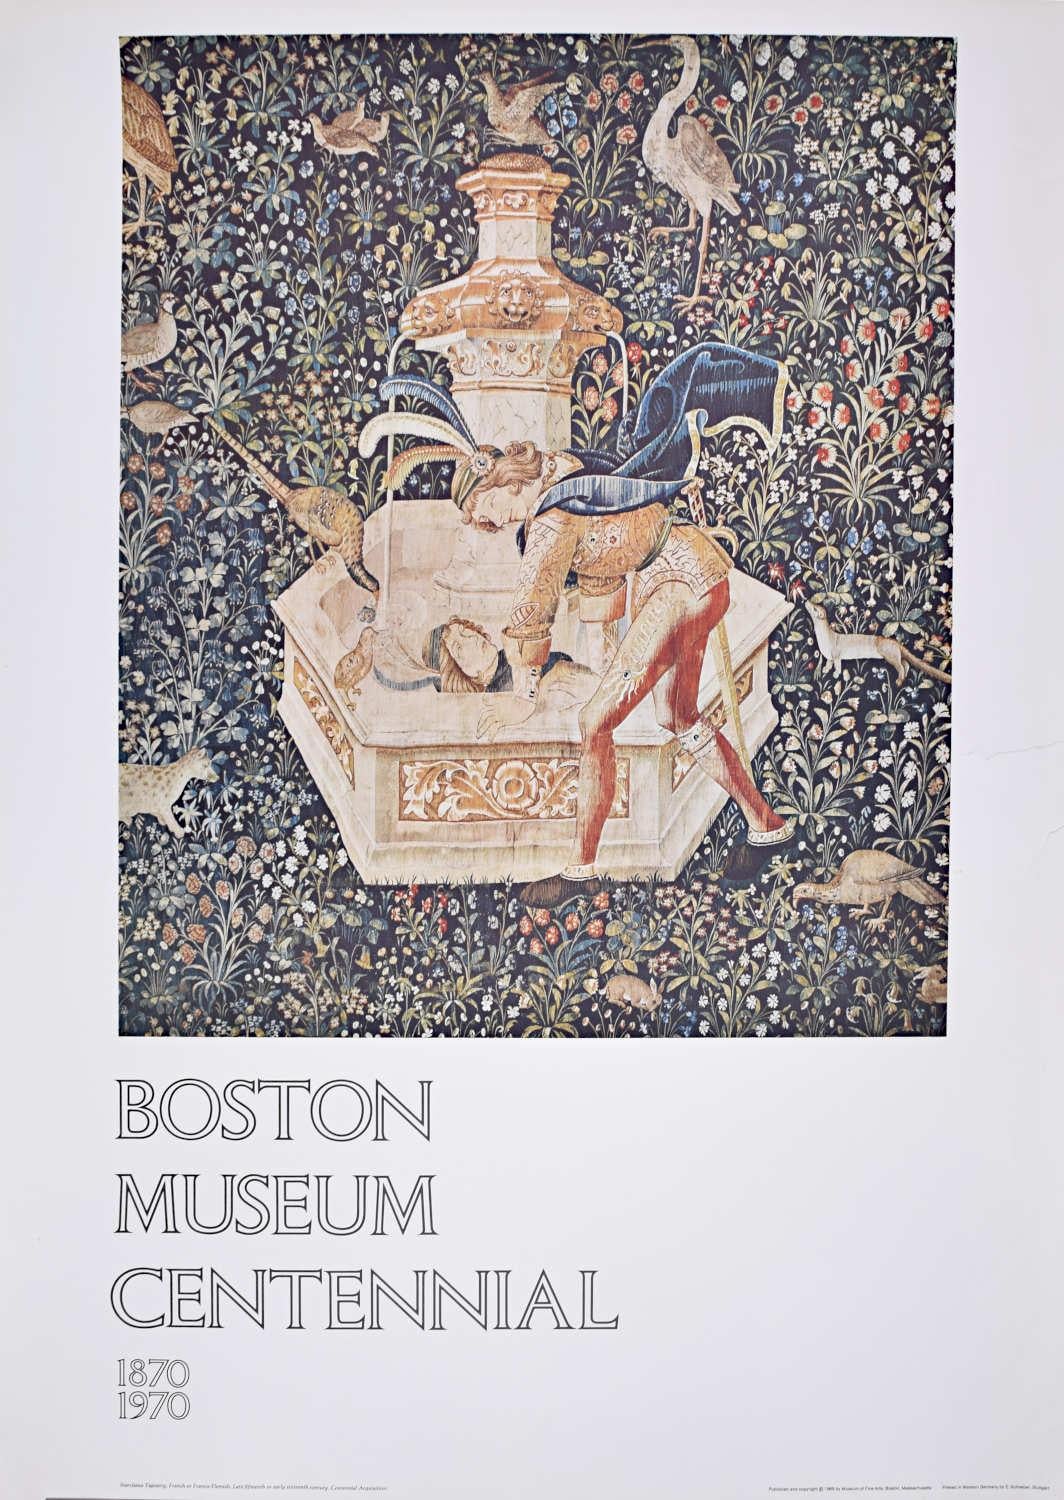 Boston Museum Hundertjahrfeier Poster 1970 Narzissen Wandteppich 15. Jahrhundert Französisch